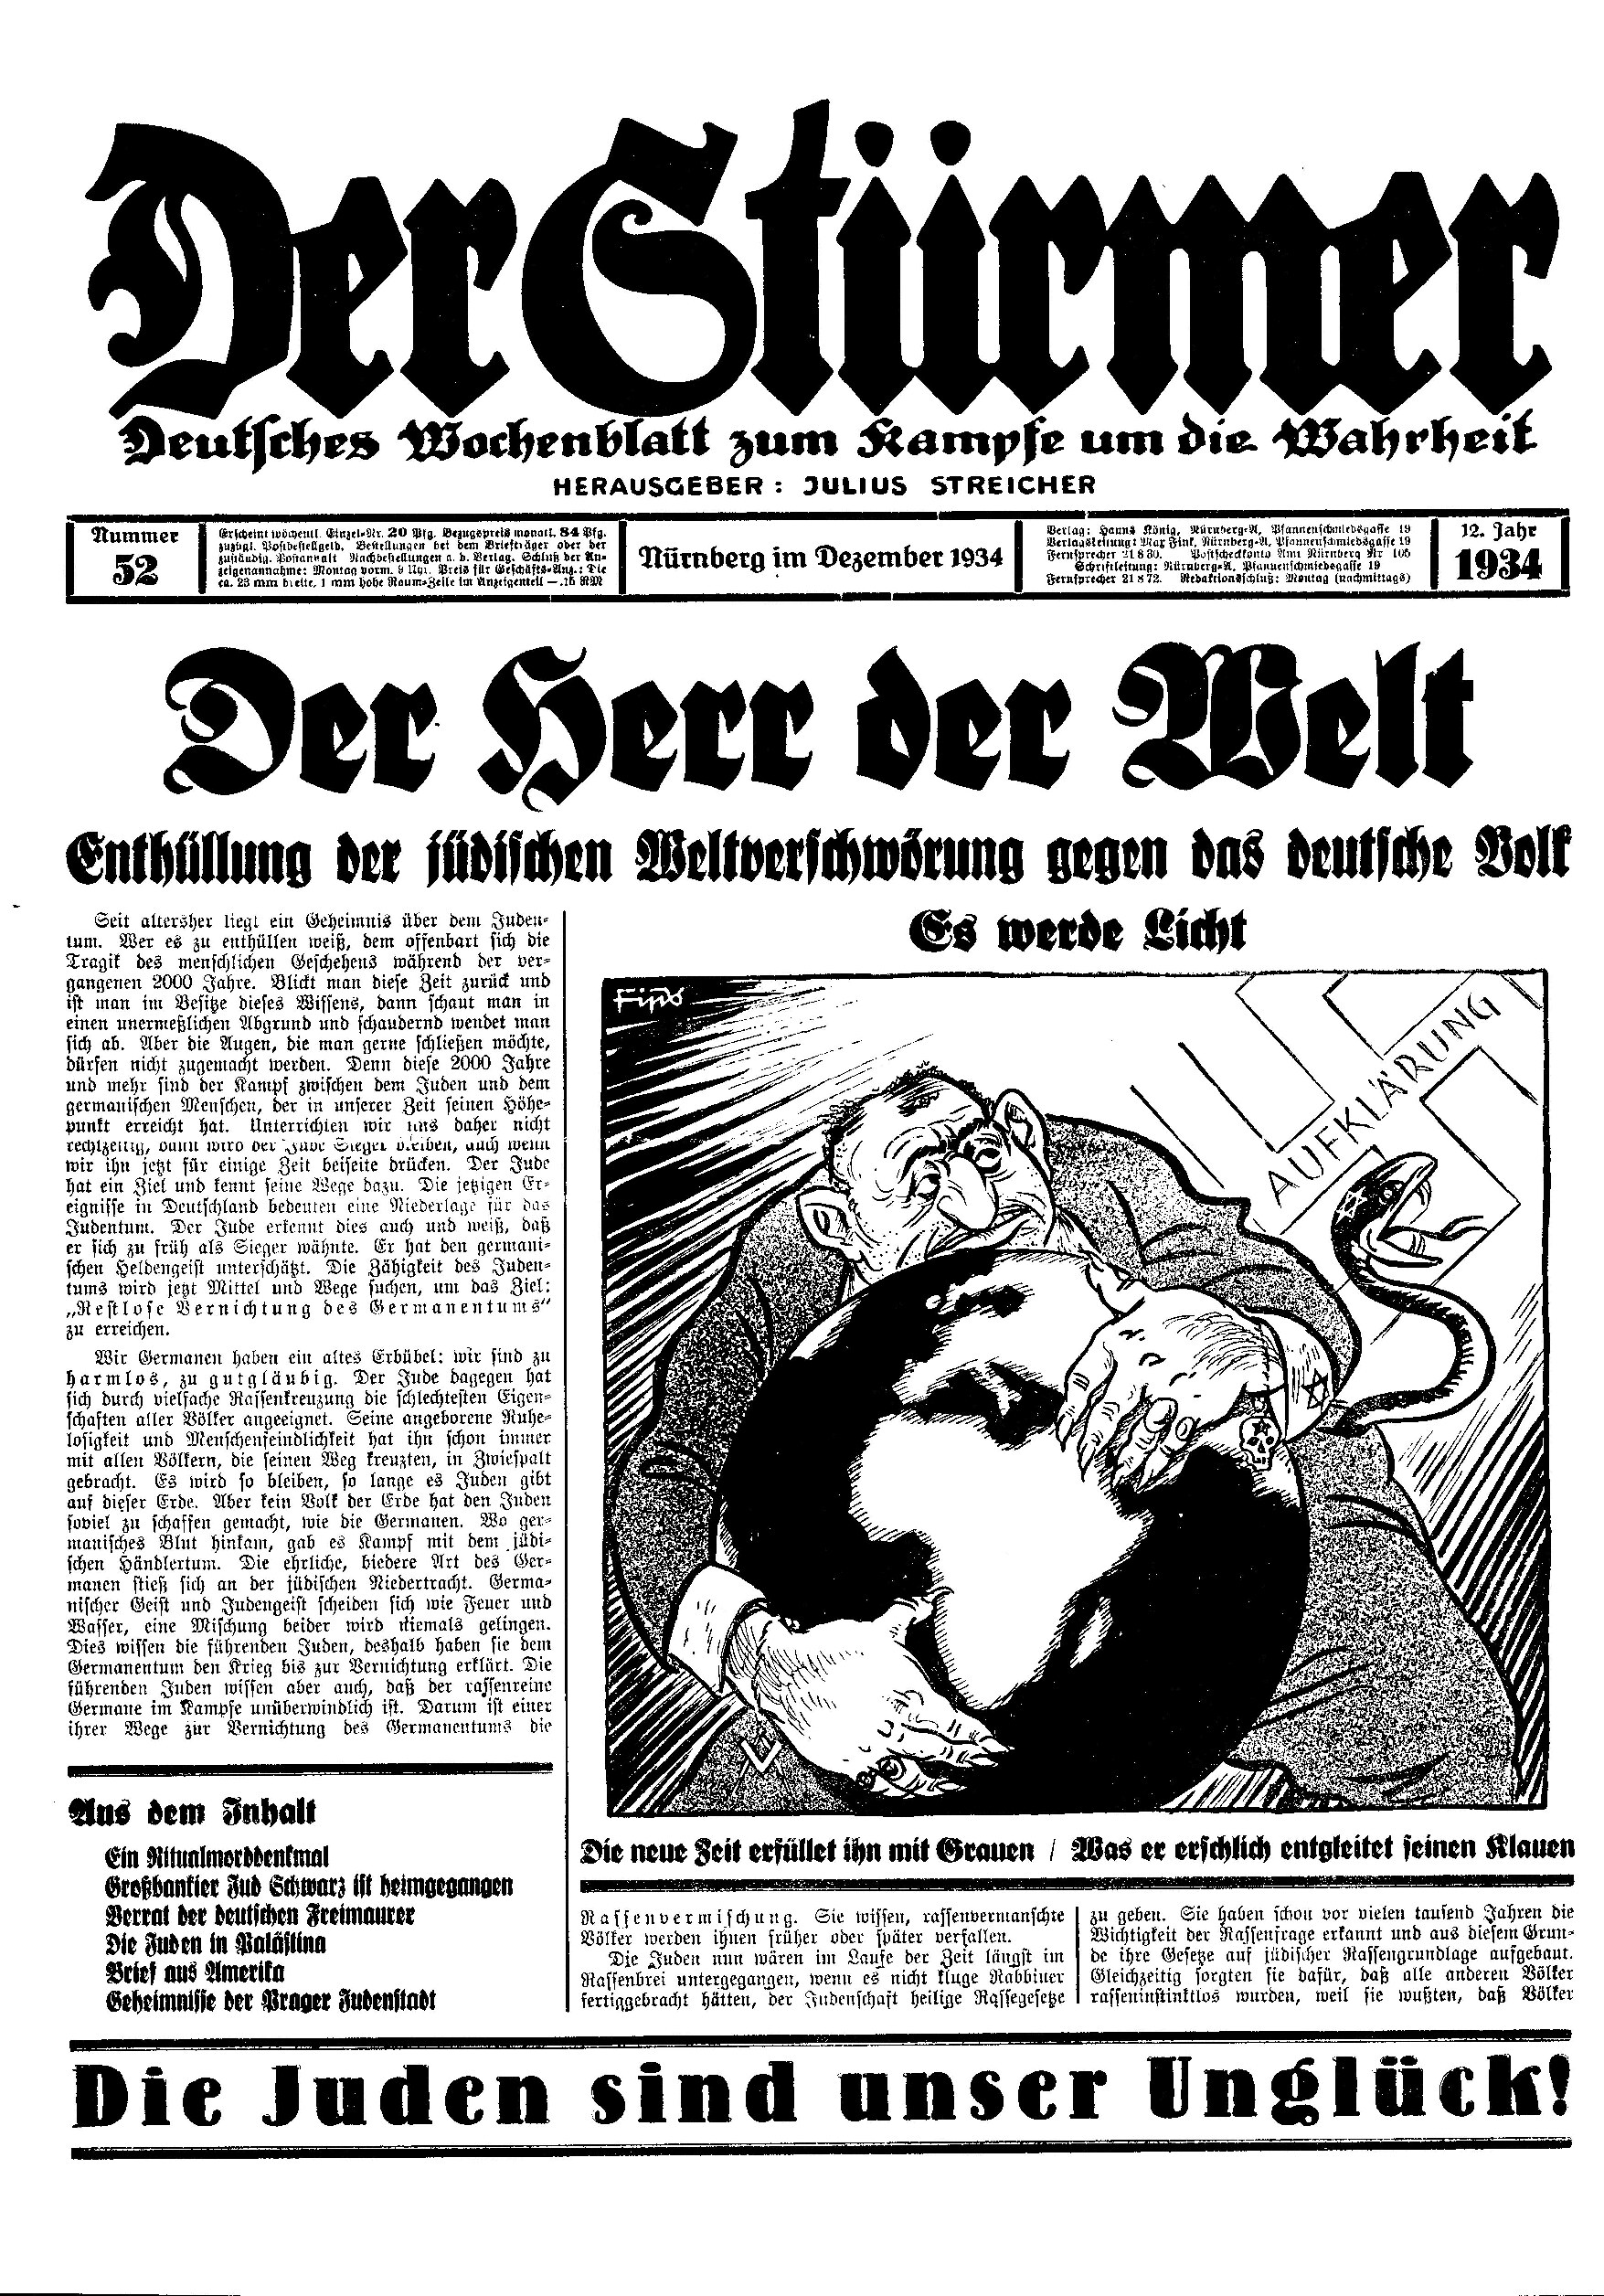 Der Stürmer - 1934 Nr. 52 (10 S., Scan, Fraktur)